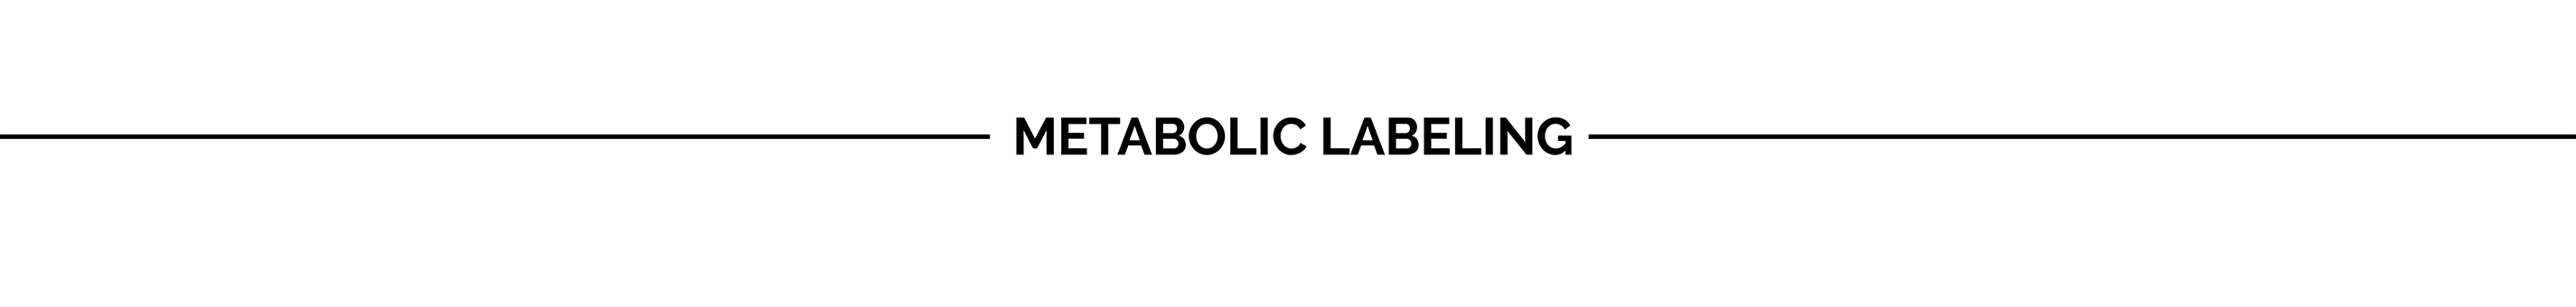 Metabolic Labeling